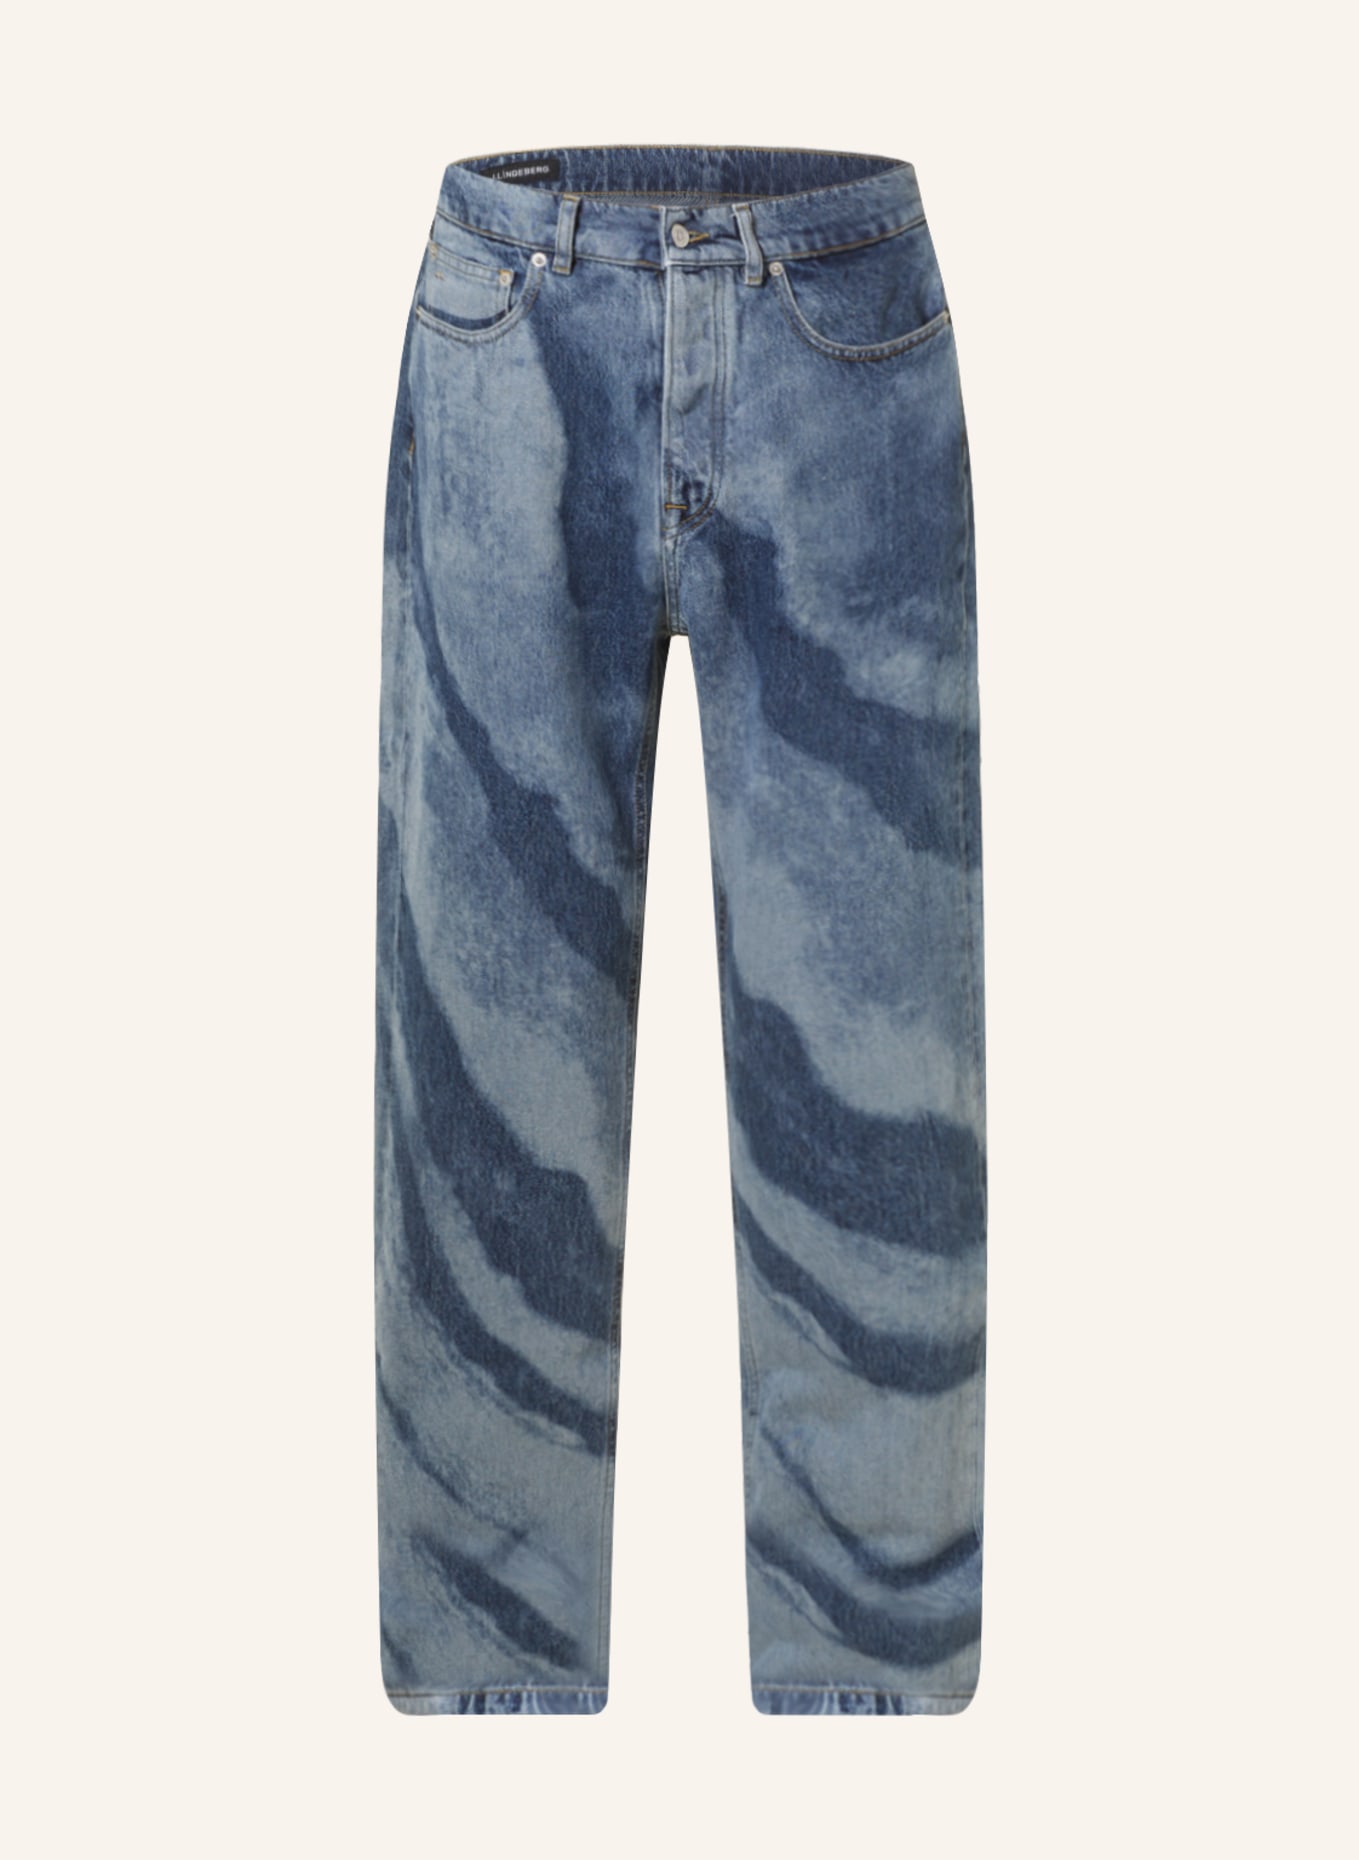 J.LINDEBERG Jeans Regular Fit, Farbe: 6428 Light Blue (Bild 1)